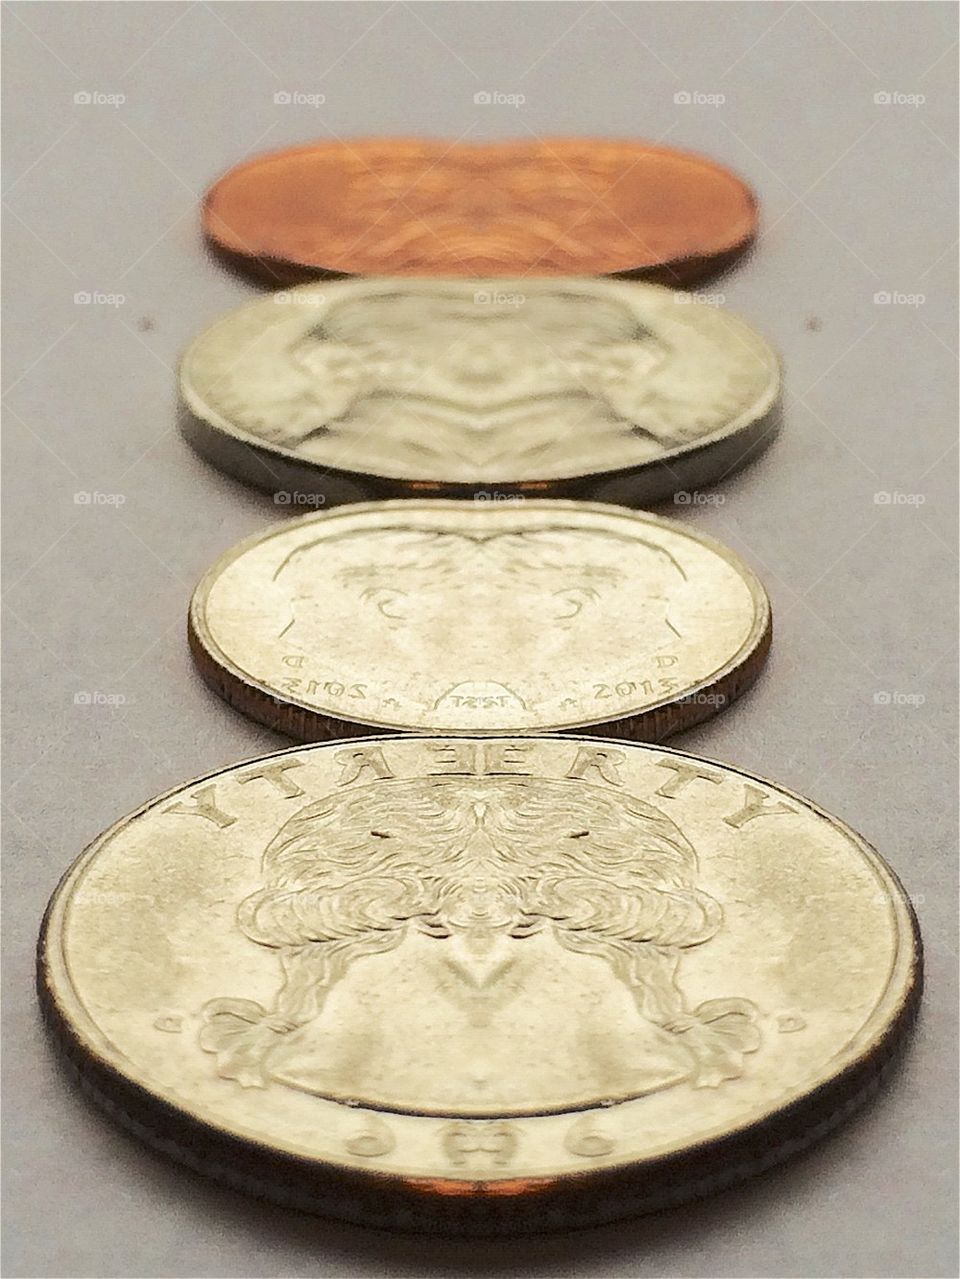 Faceless coin